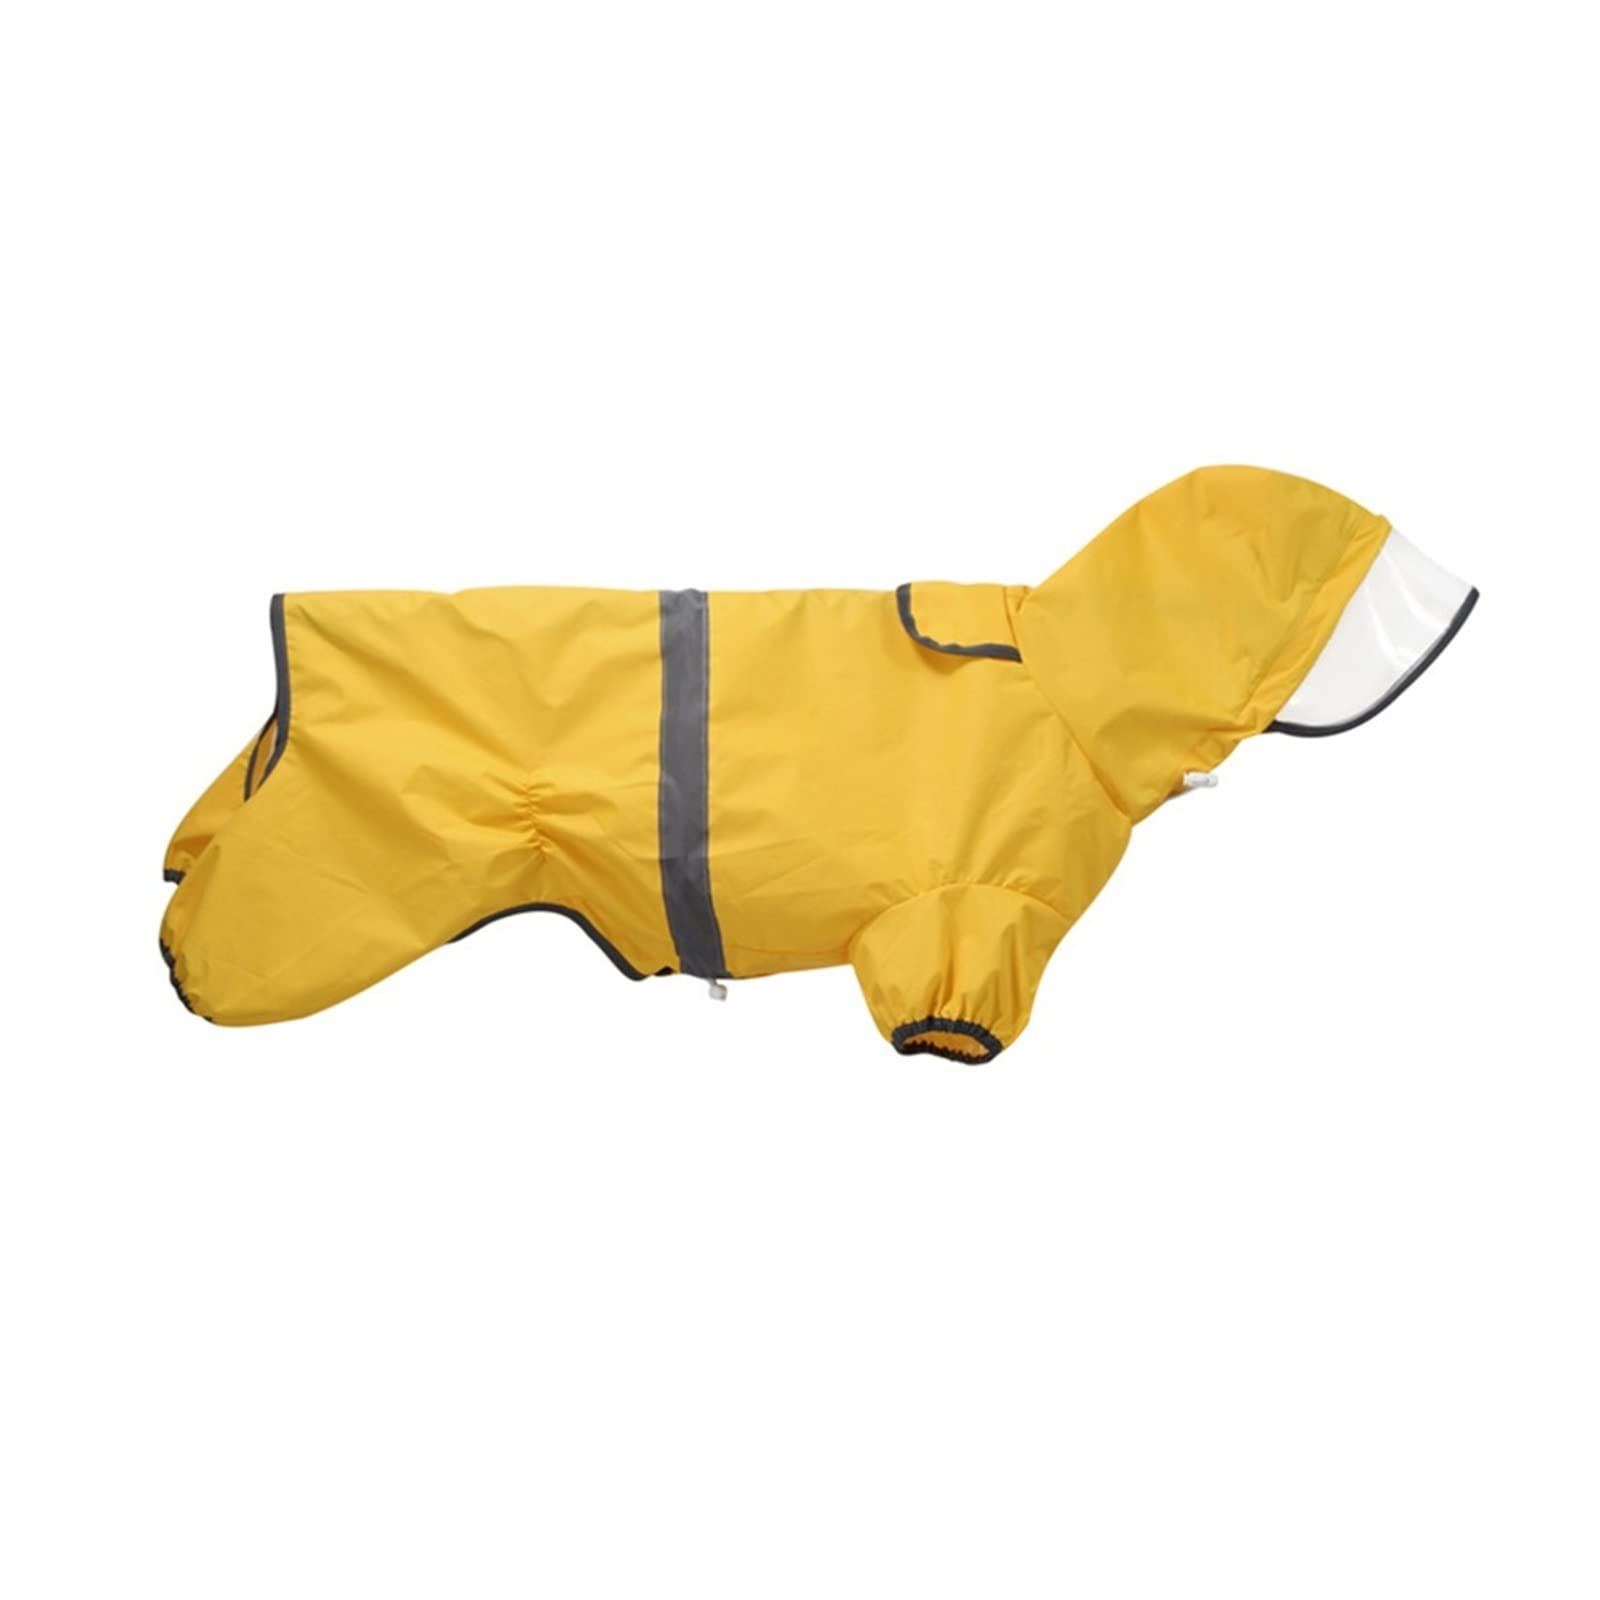 Regenmantel für Hunde, Leichtes Gewicht Tragbar Haustier-Regenjacke Wasserdicht Verstellbar Reflektierende Sicherheit Haustier-Poncho für kleine Hunde (Farbe : Gelb, Größe : XL)